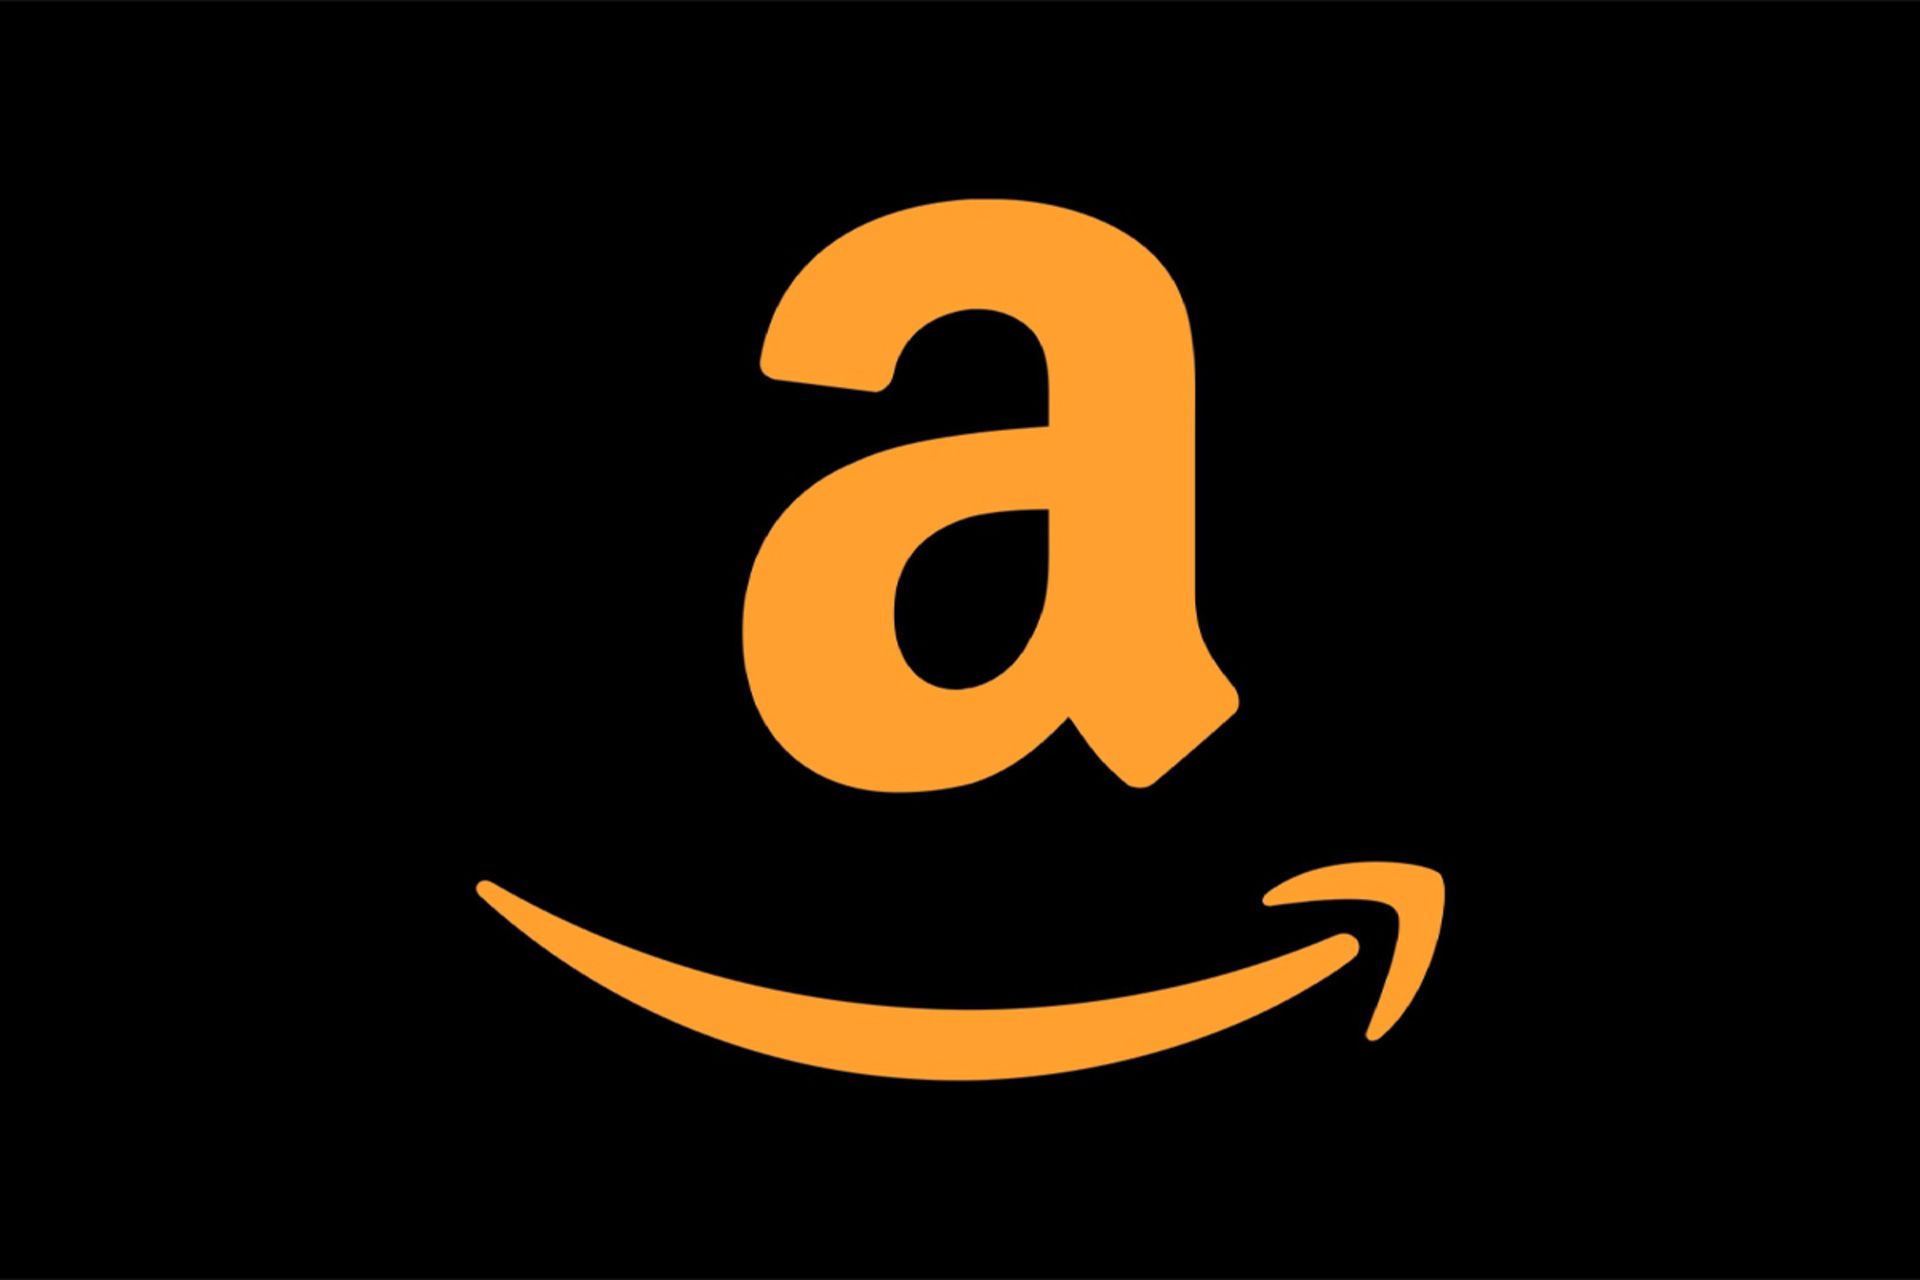 لوگو آمازون / Amazon نارنجی پس زمینه مشکی